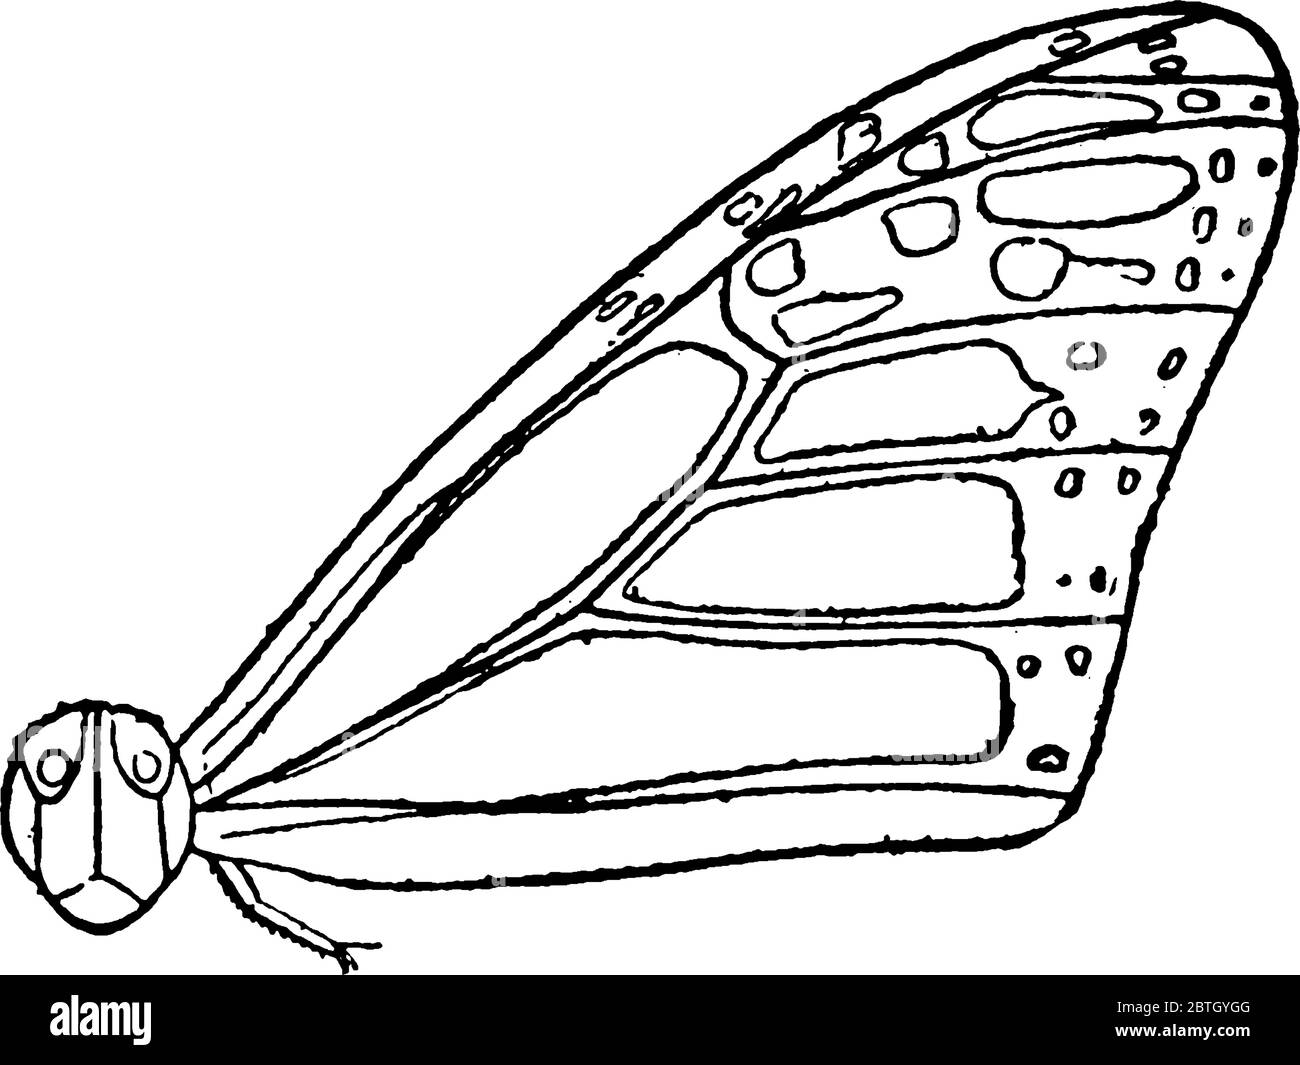 La sezione del corpo di Monarch Butterfly dopo la testa è chiamata torace, questo diagramma mostra la sezione mesotorace del torace., disegno di linea vintage o incisione Illustrazione Vettoriale